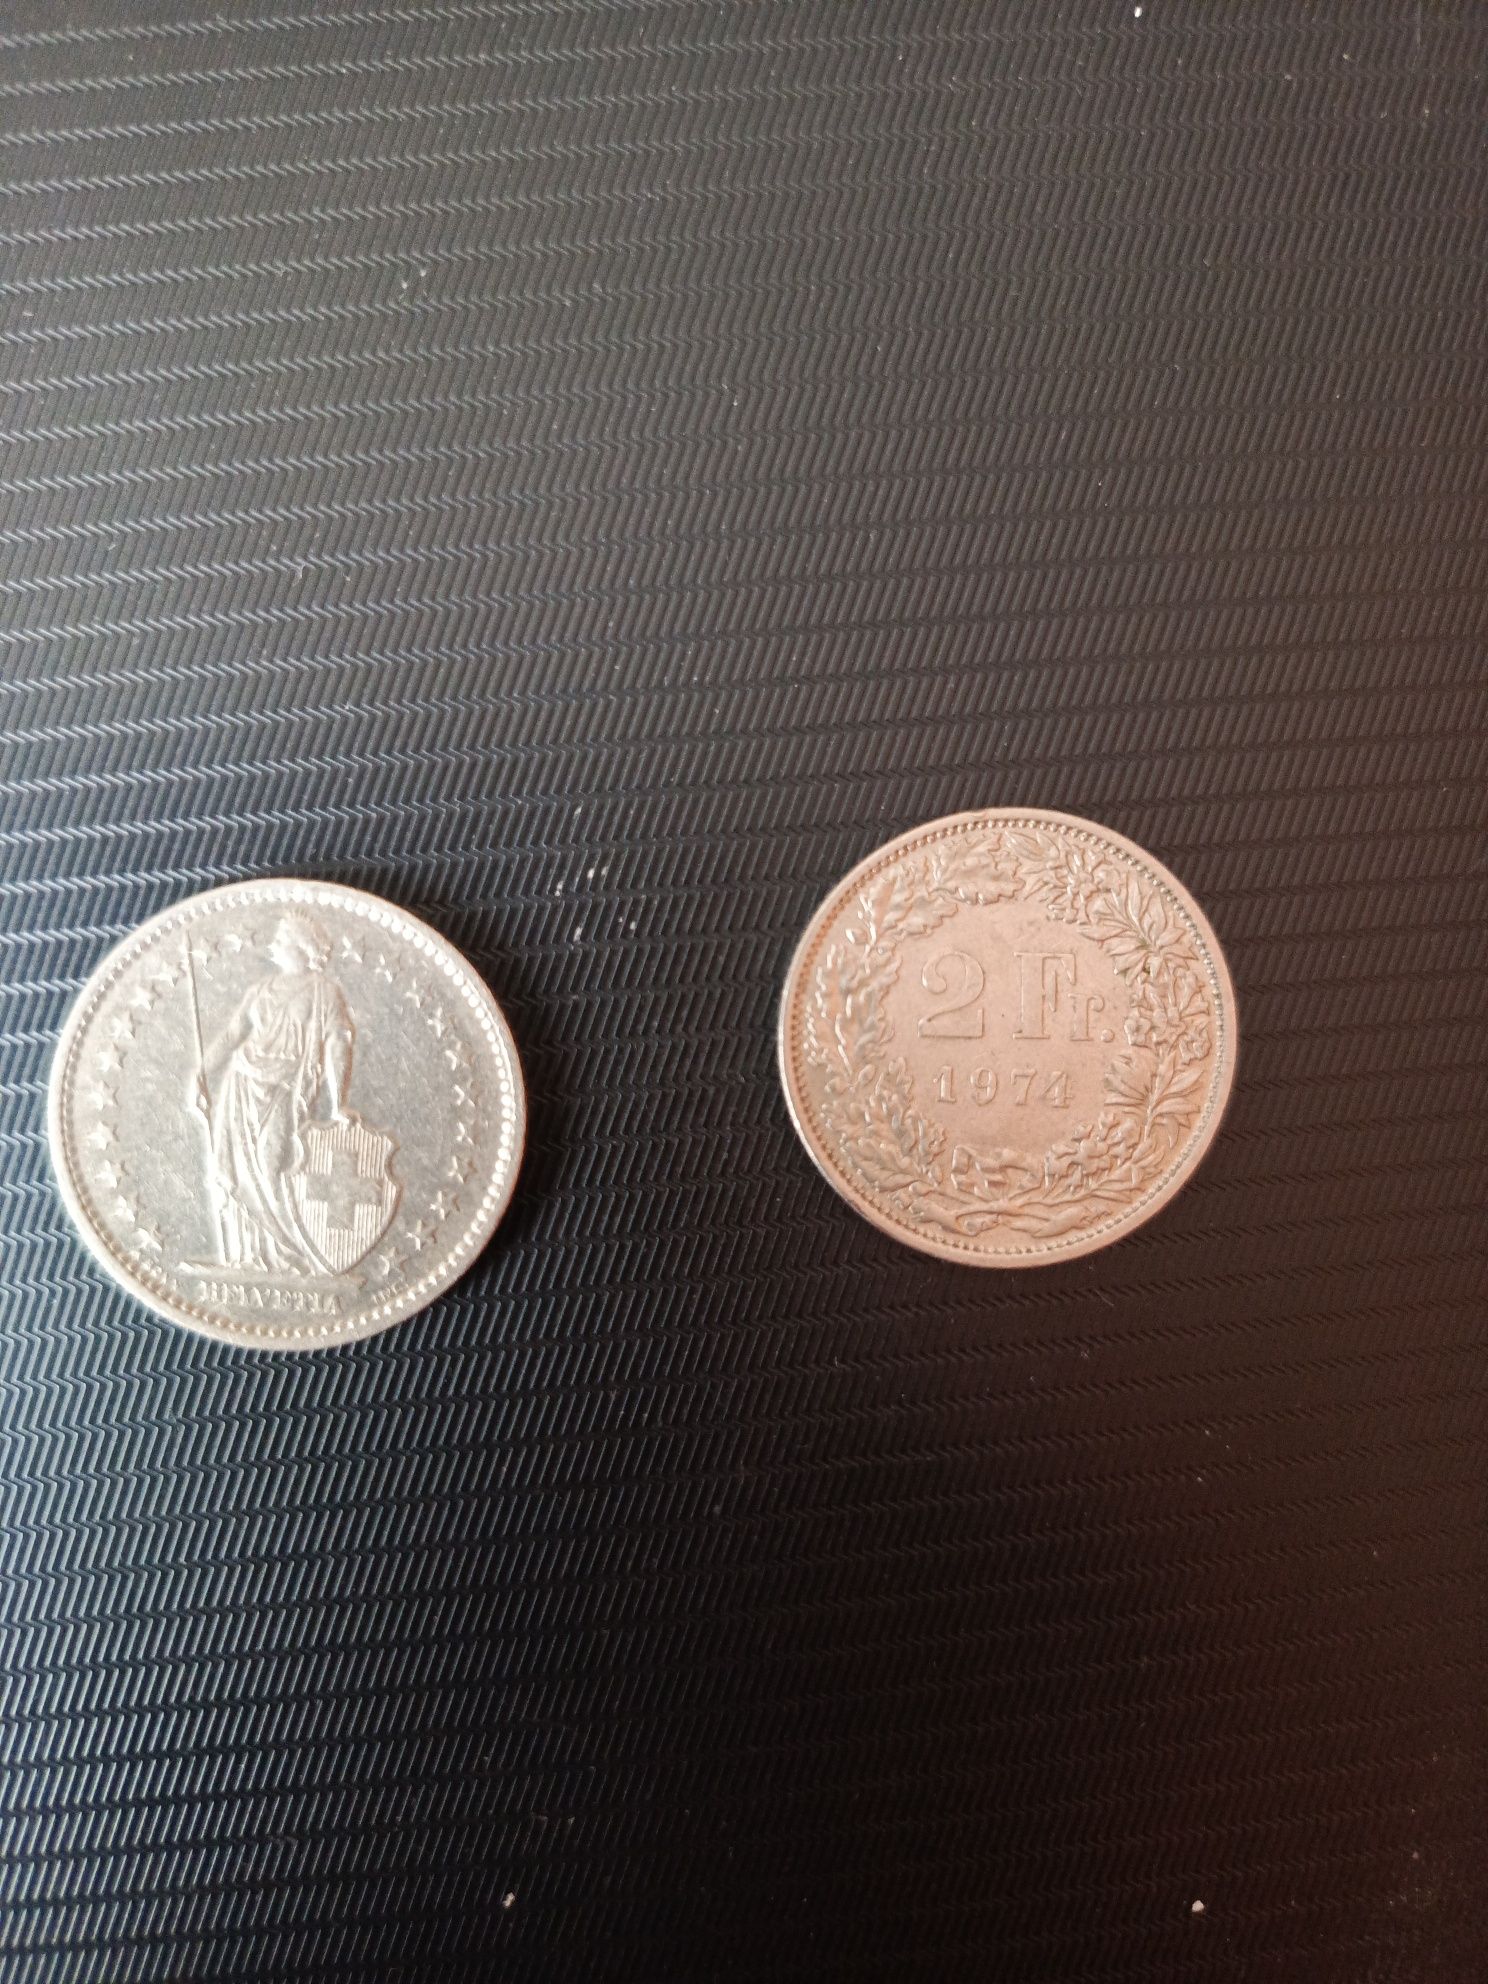 Монети 1974 року(Швейцарія)2Fr